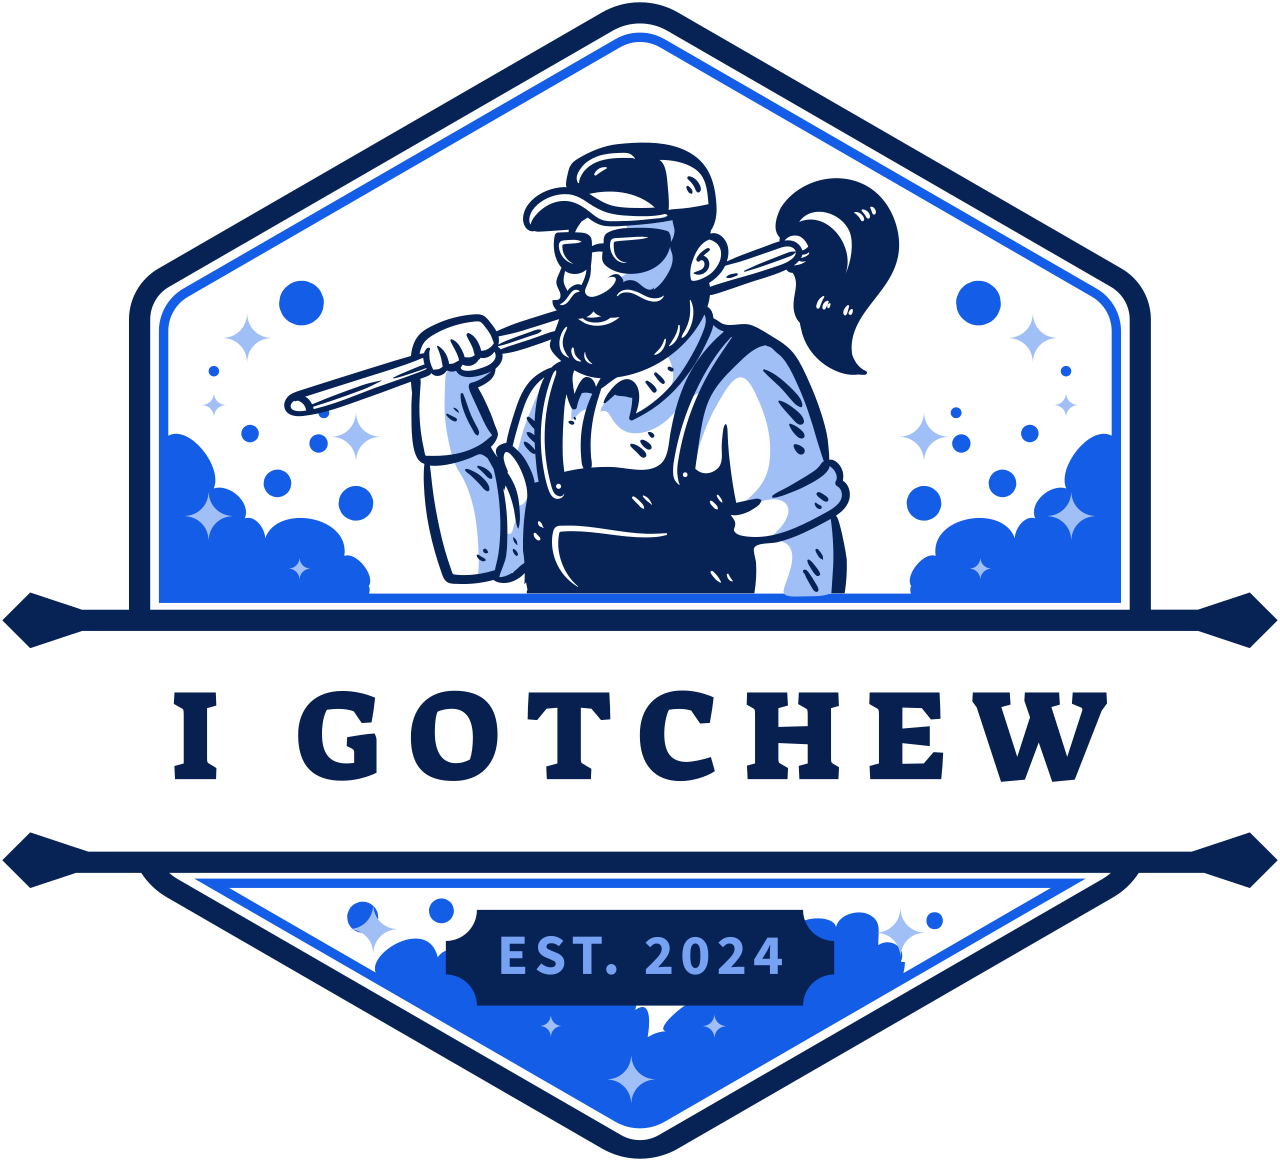 I Gotchew's logo